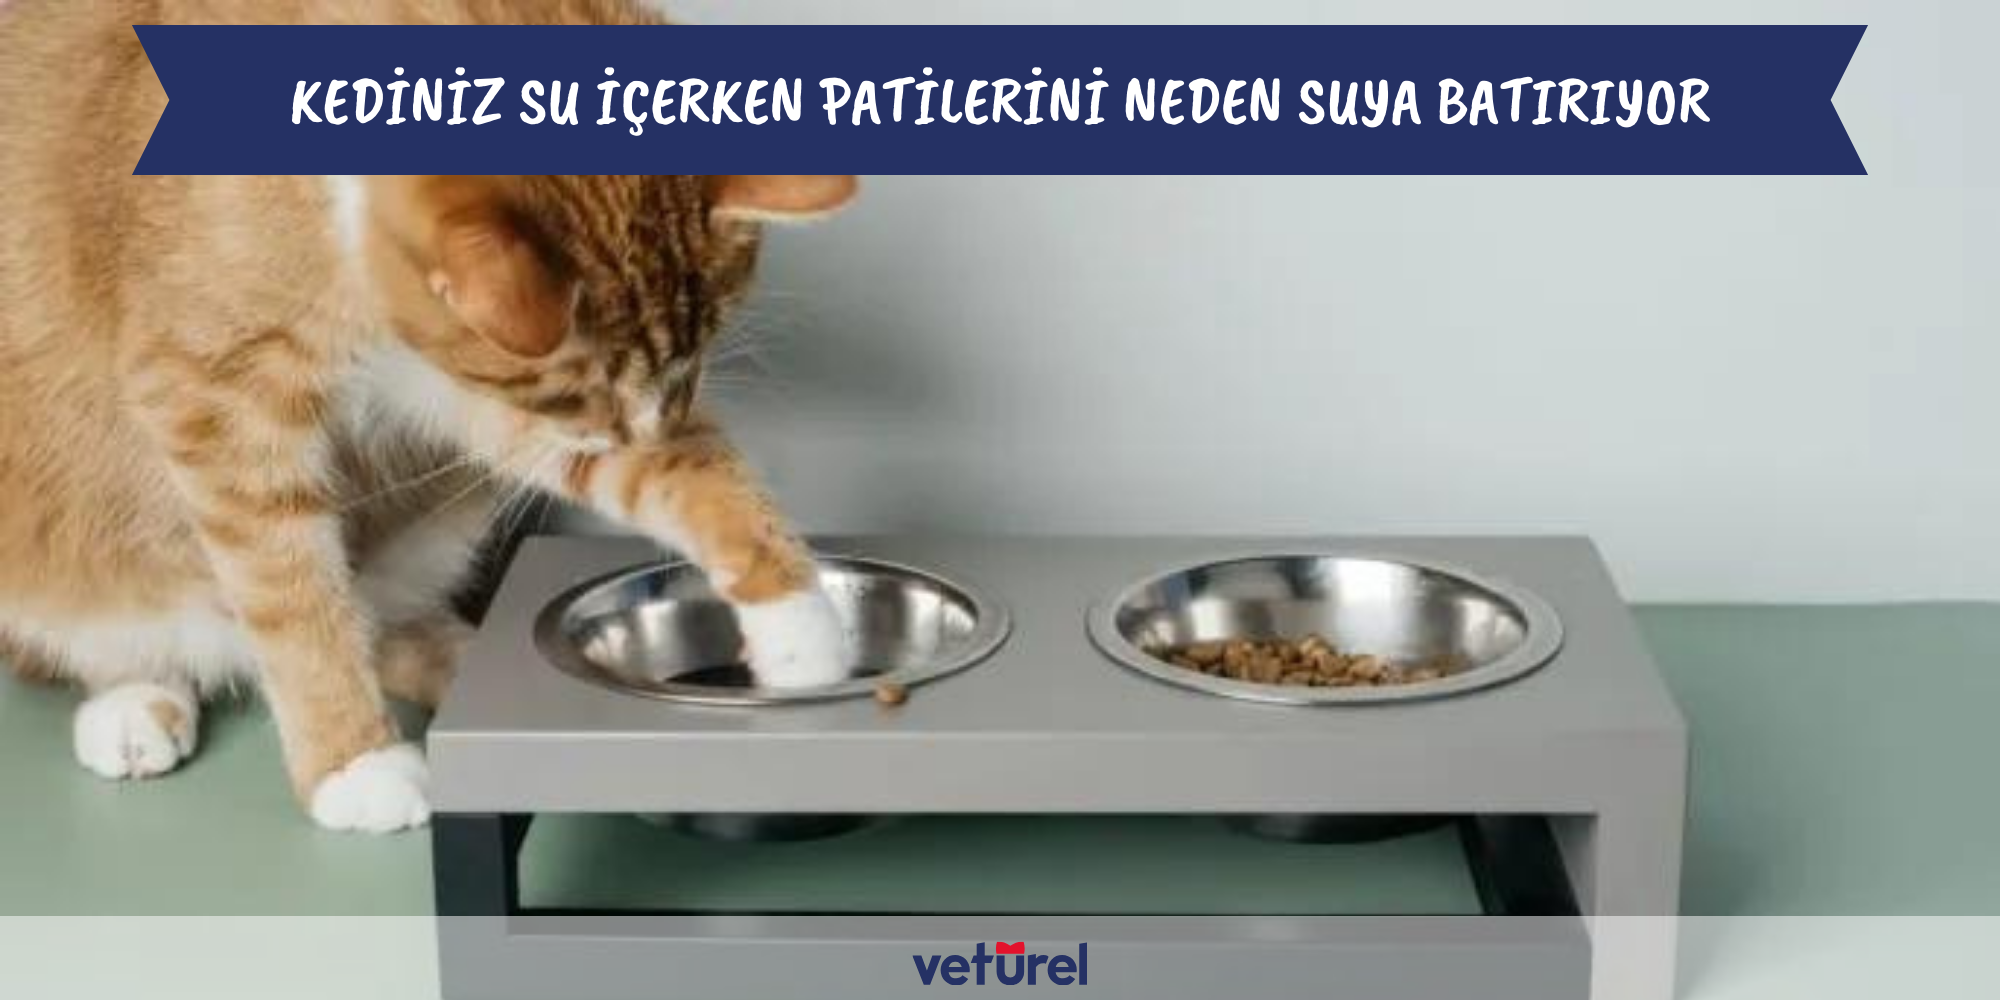 kediniz su içerken patilerini neden suya batırıyor